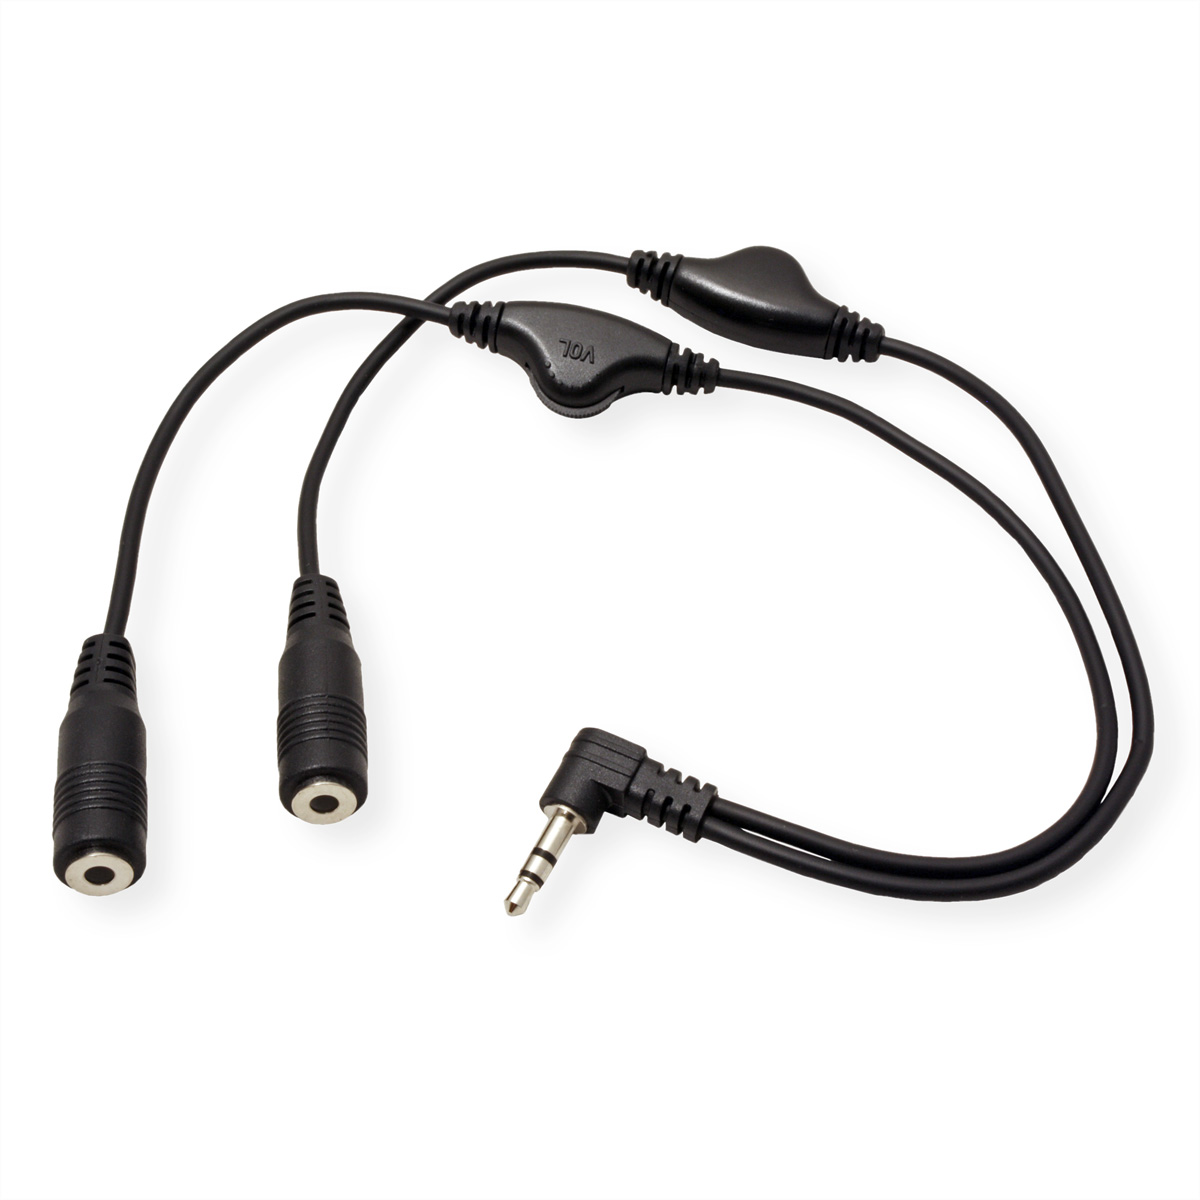 ROLINE Lautsprecher-Y-Kabel, 3,5mm (Stecker, 2x 280 Adapter, mit 3,5mm Volumenregler, Buchse), mm